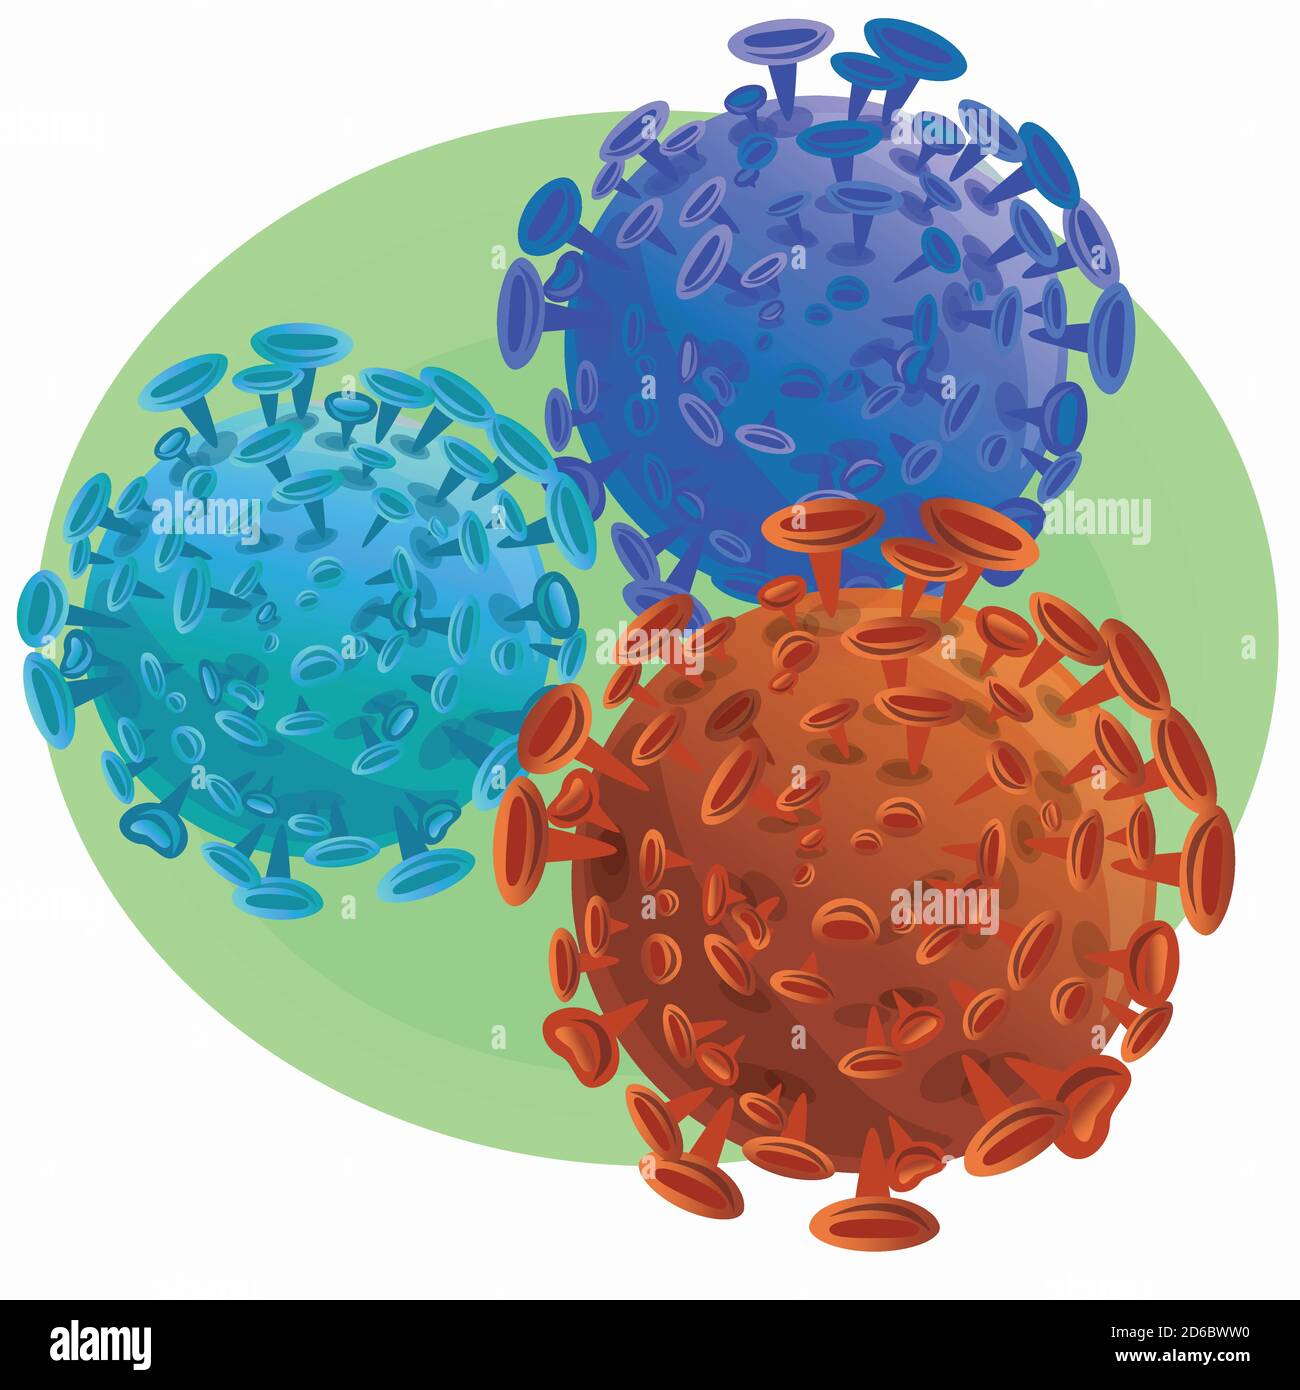 ilustración de células microscópicas aisladas de color naranja y azul del coronavirus - bacterias SARS-CoV-2 sobre fondo verde Ilustración del Vector